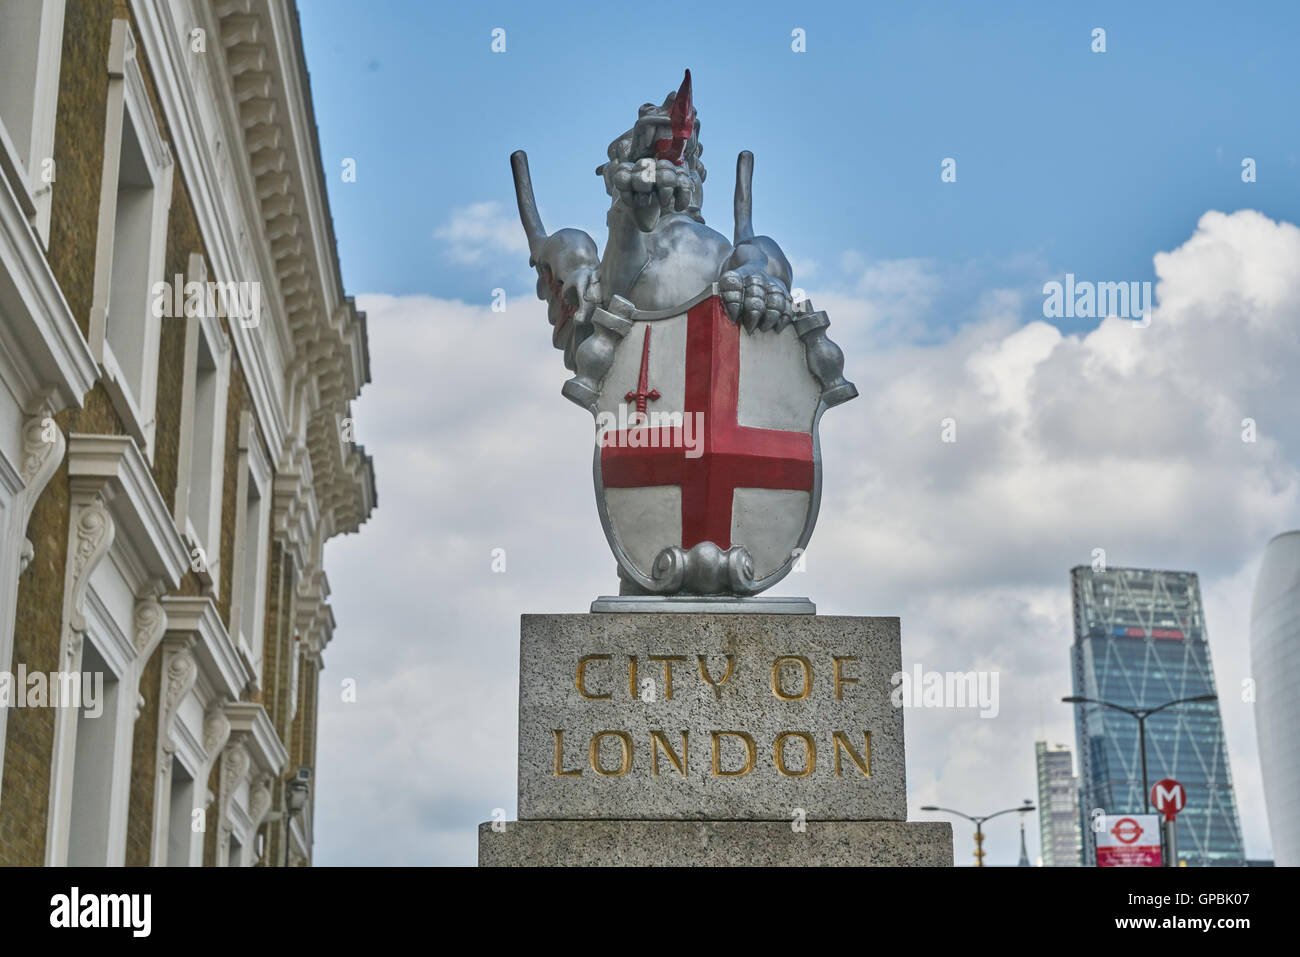 La ciudad de Londres, símbolo de dragón de la ciudad de Londres. Foto de stock